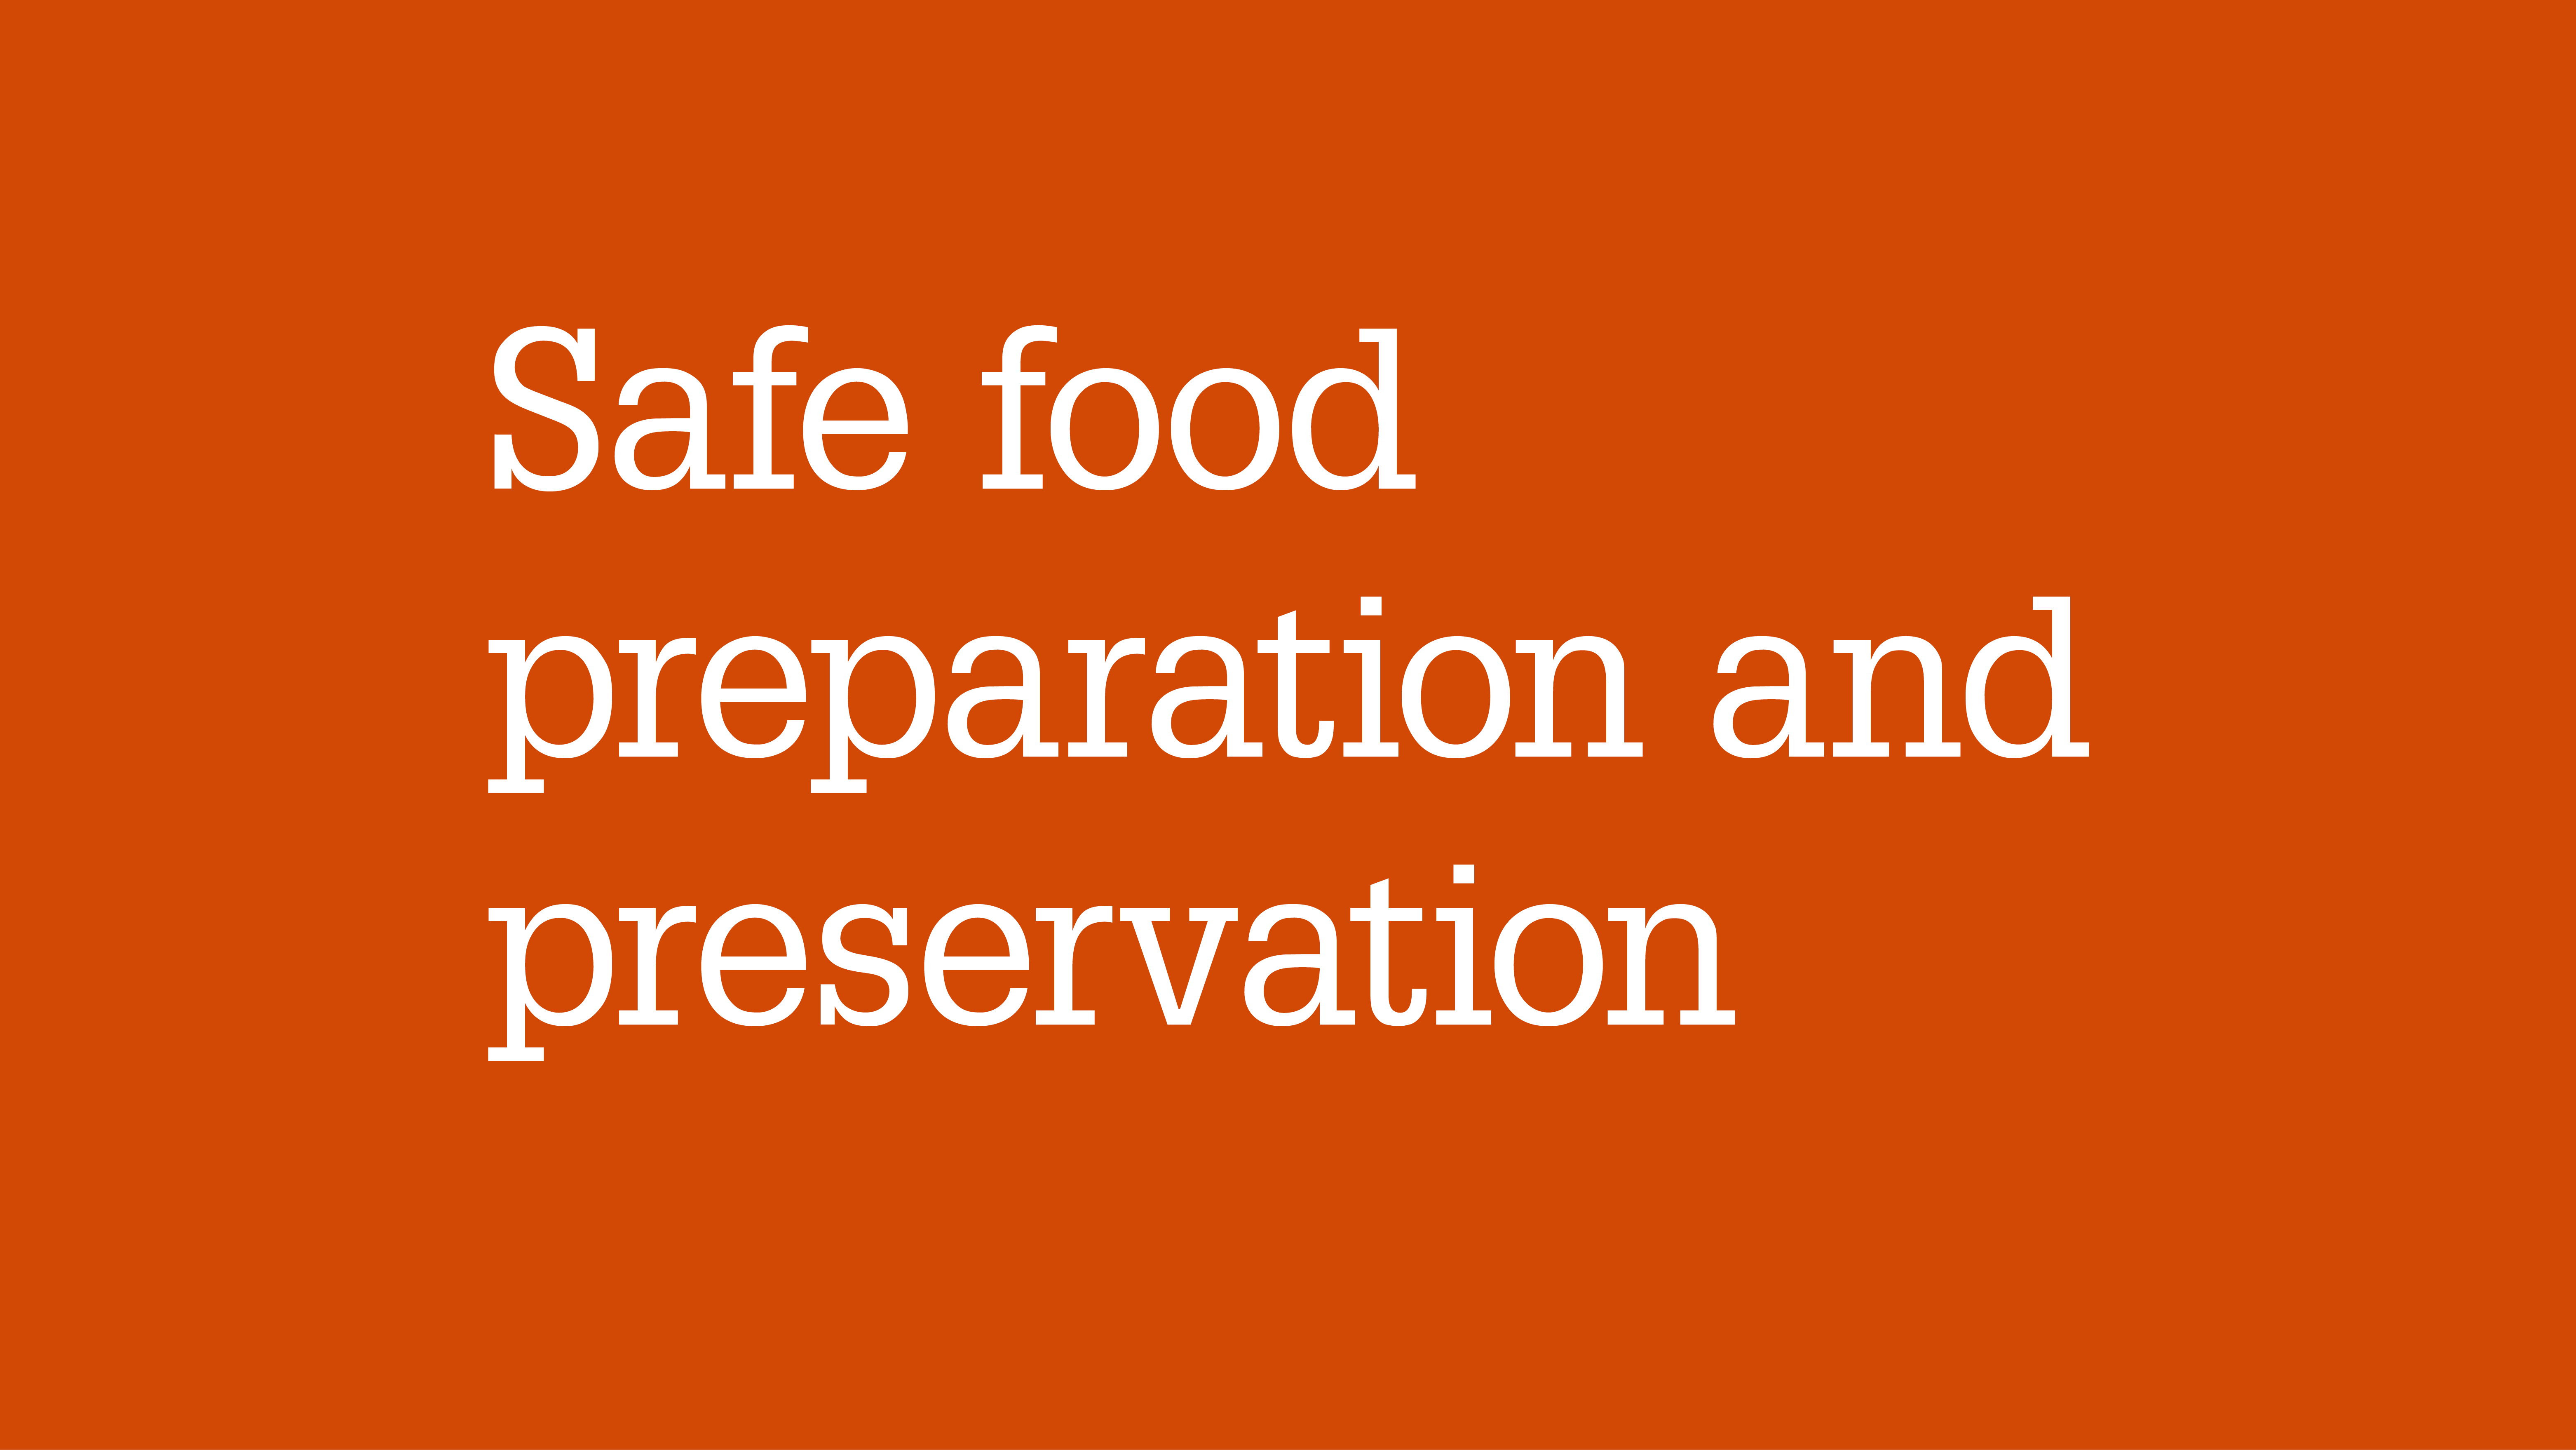 Safe food preparation and preservation.